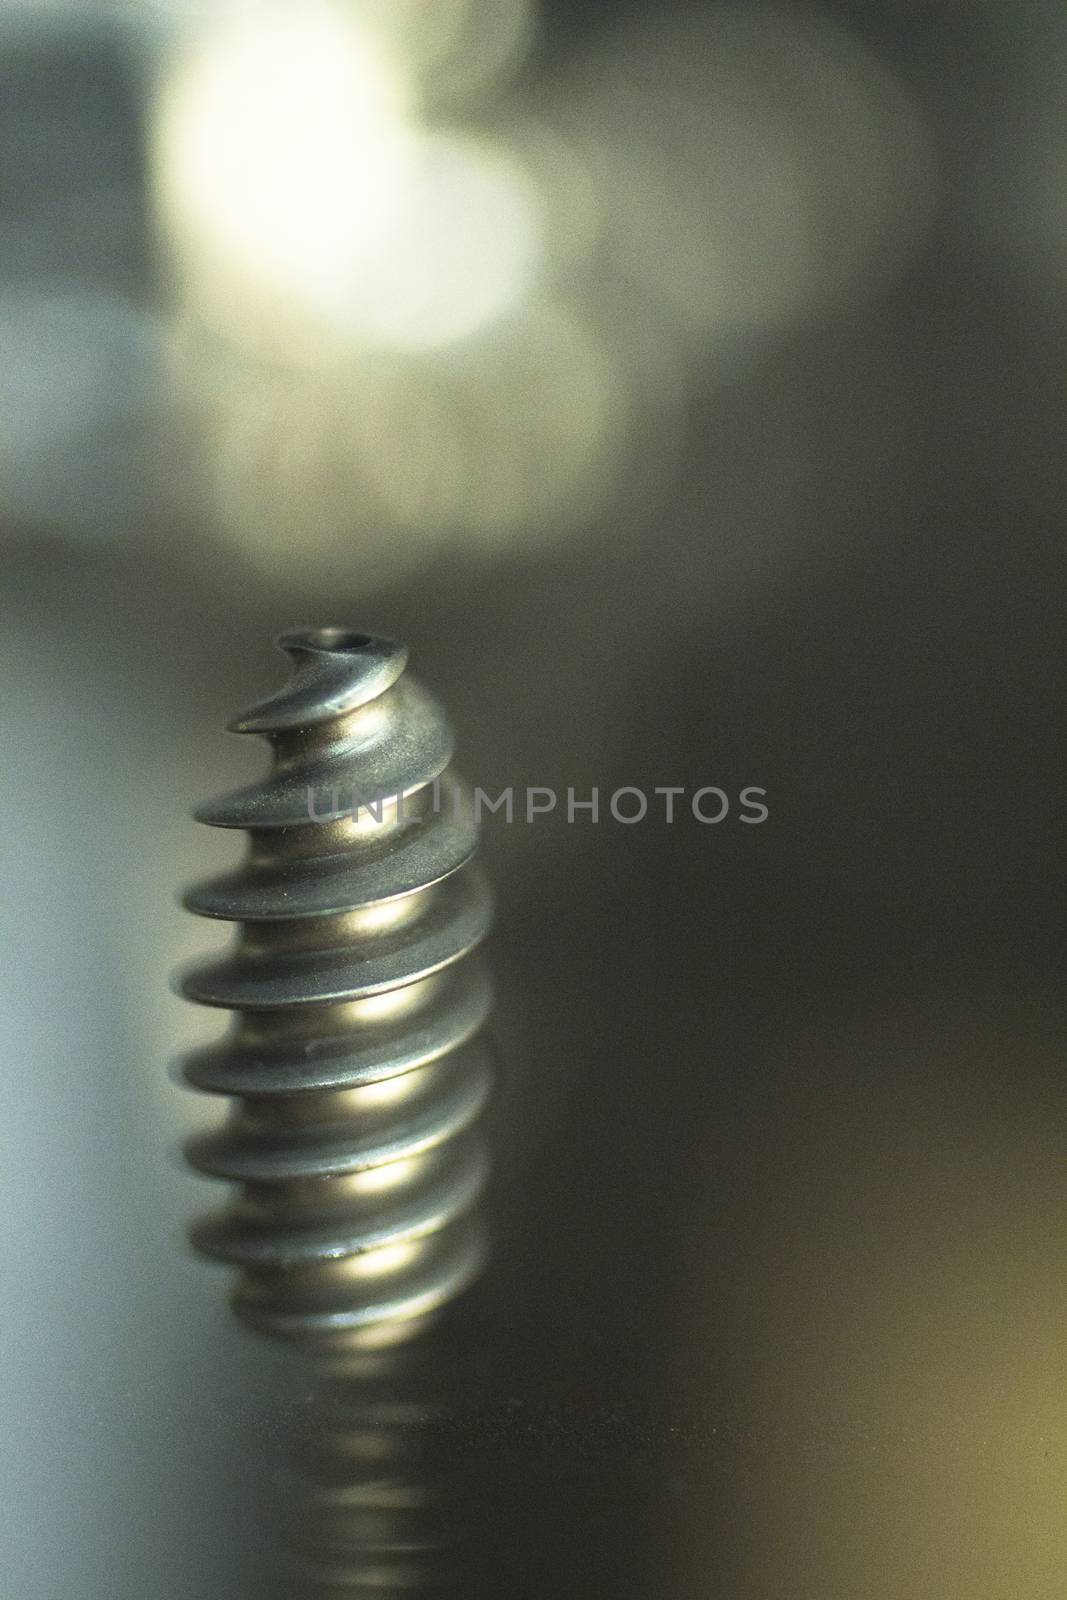 Traumatology orthopedic surgery implant metal screw by edwardolive